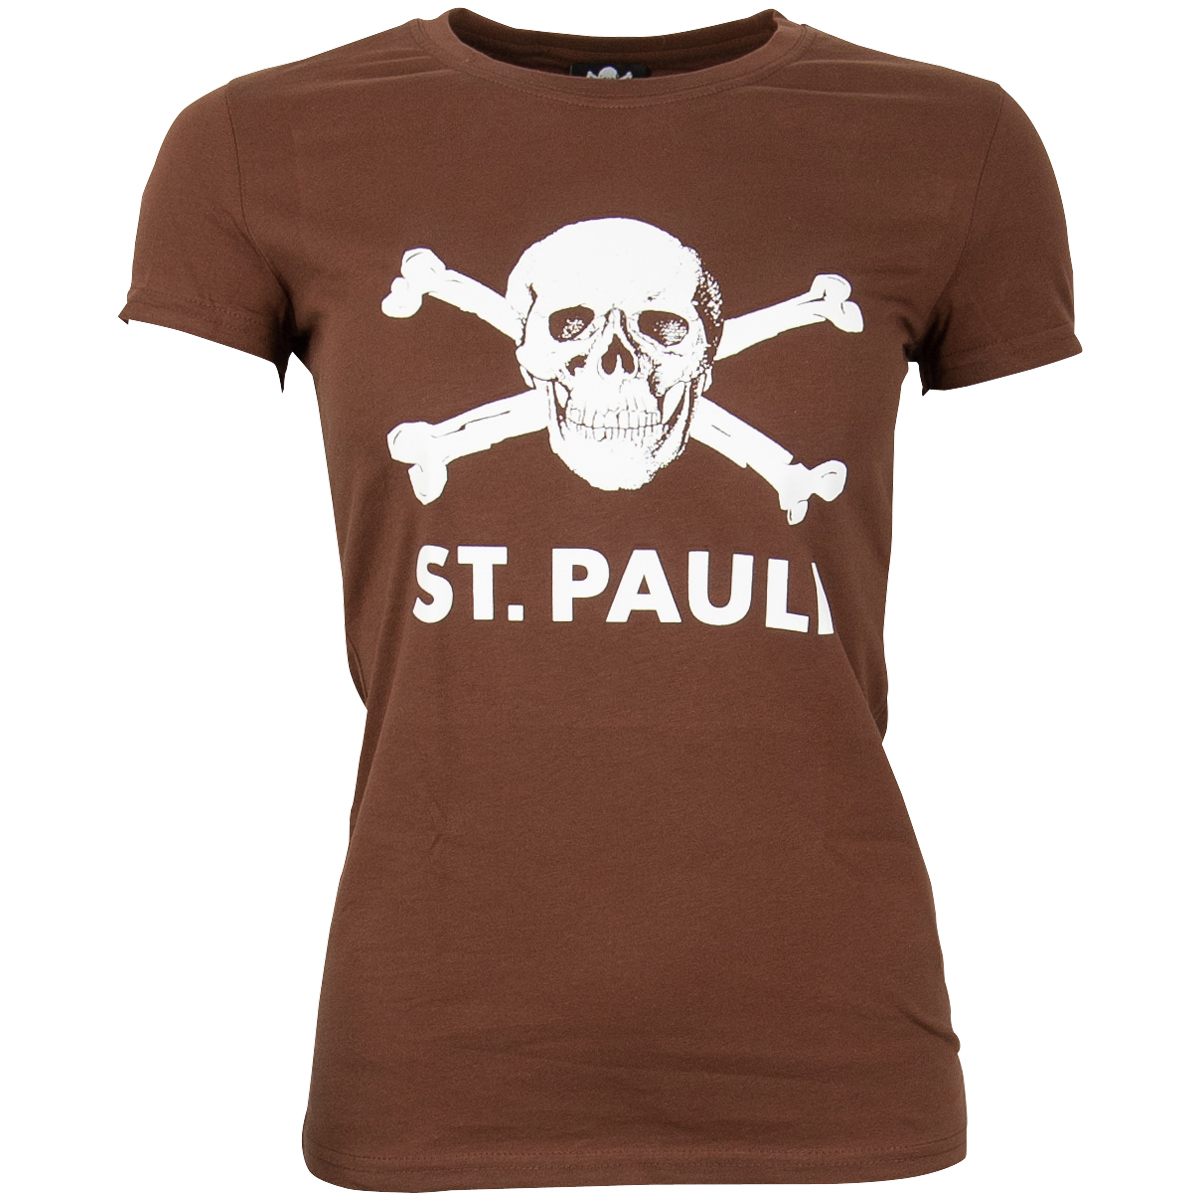 FC St. Pauli - Girly T-Shirt Totenkopf groß - braun